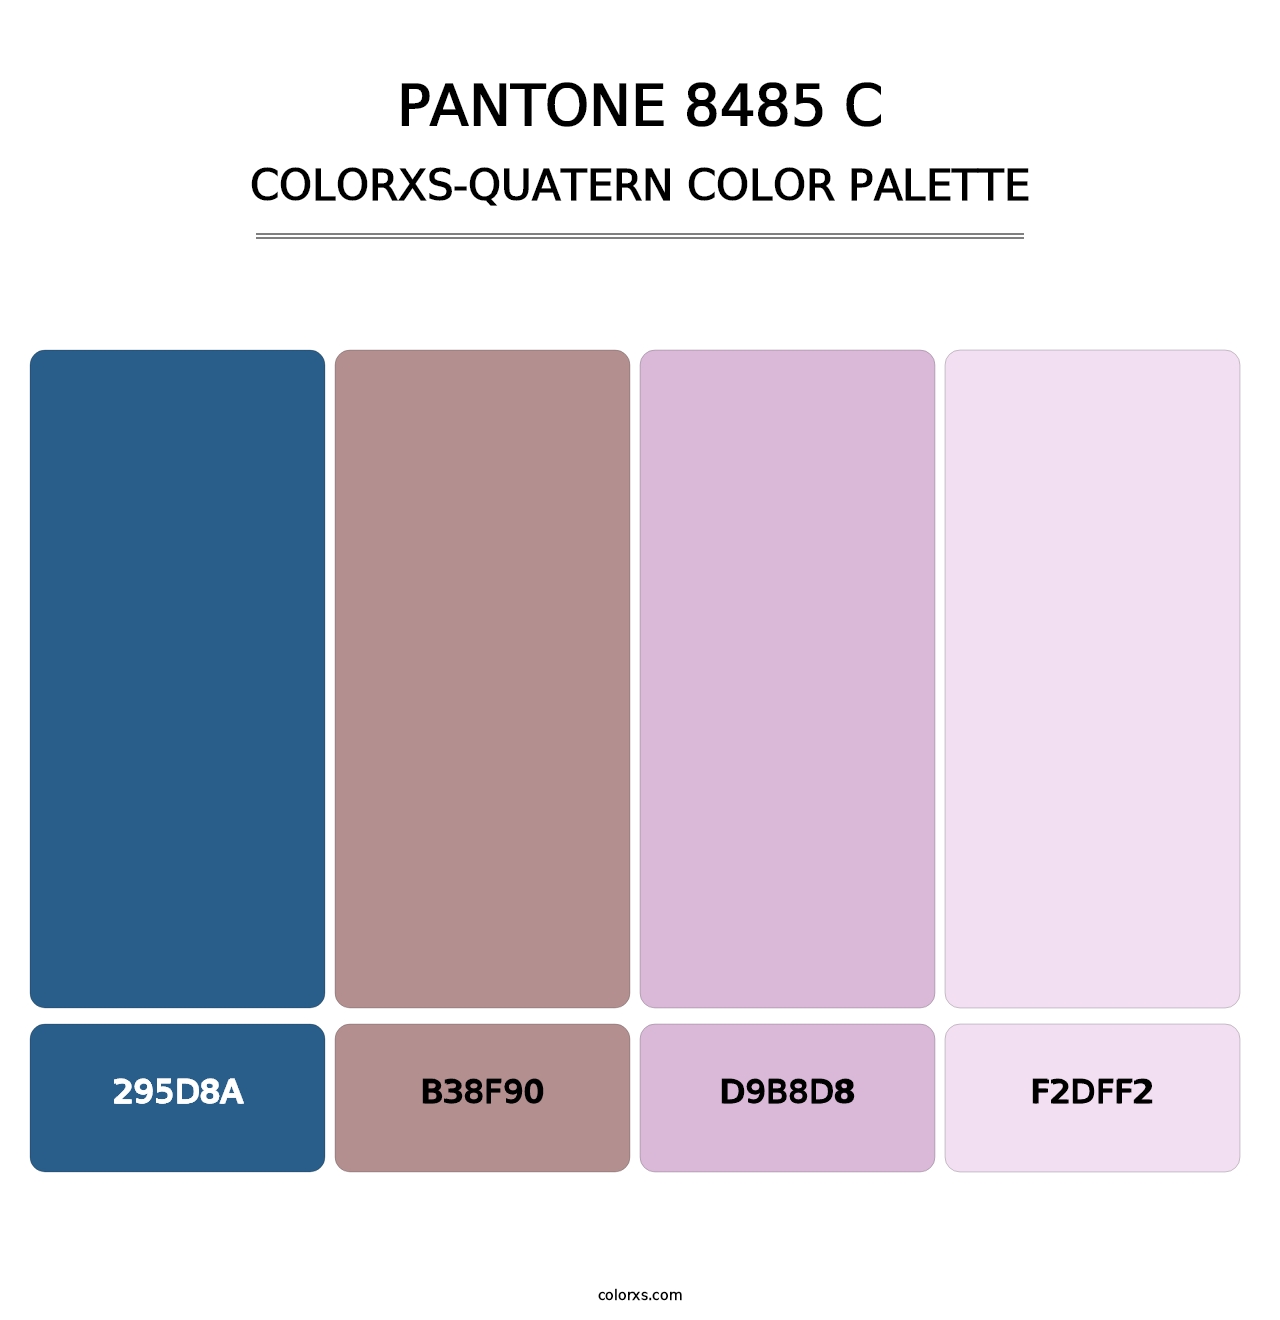 PANTONE 8485 C - Colorxs Quatern Palette